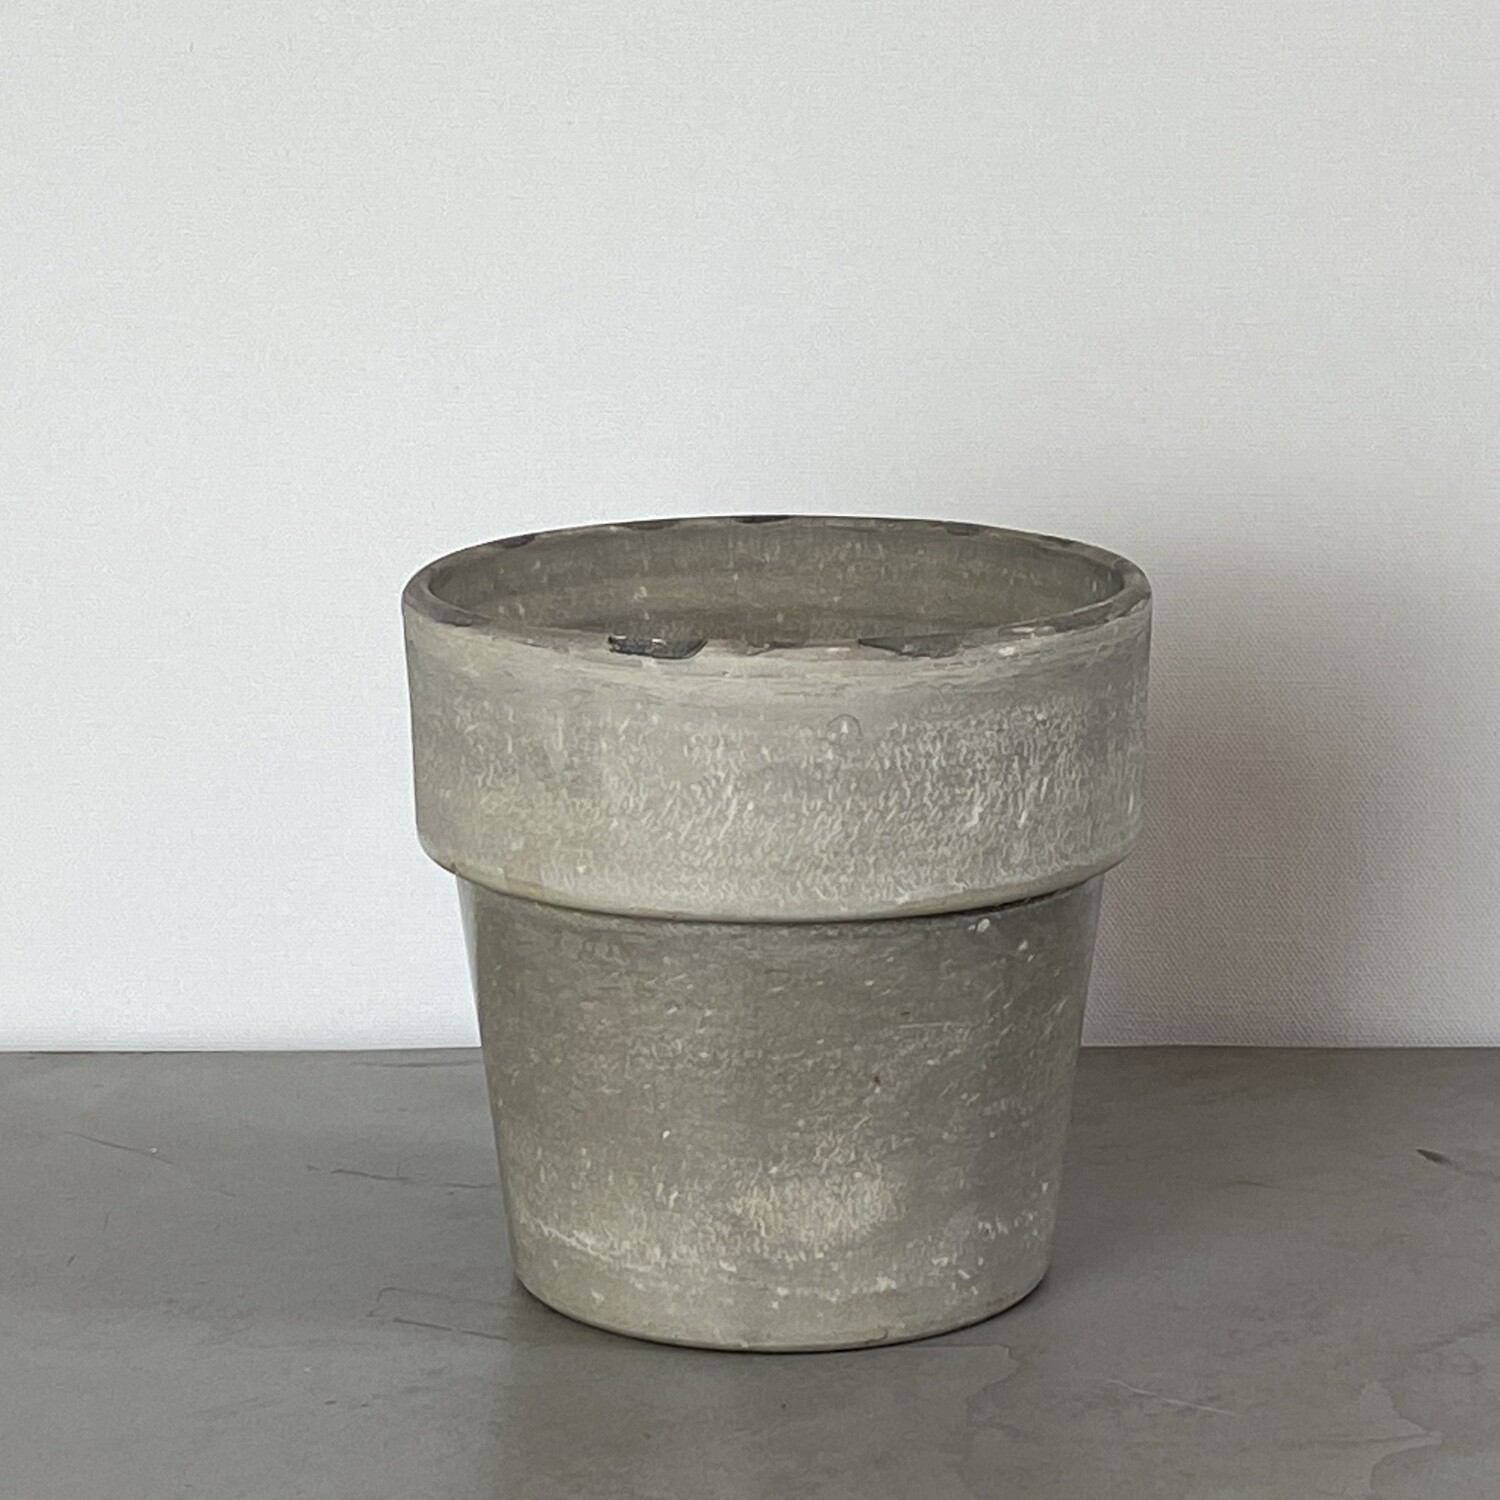 Concrete plant pot with top trim detail